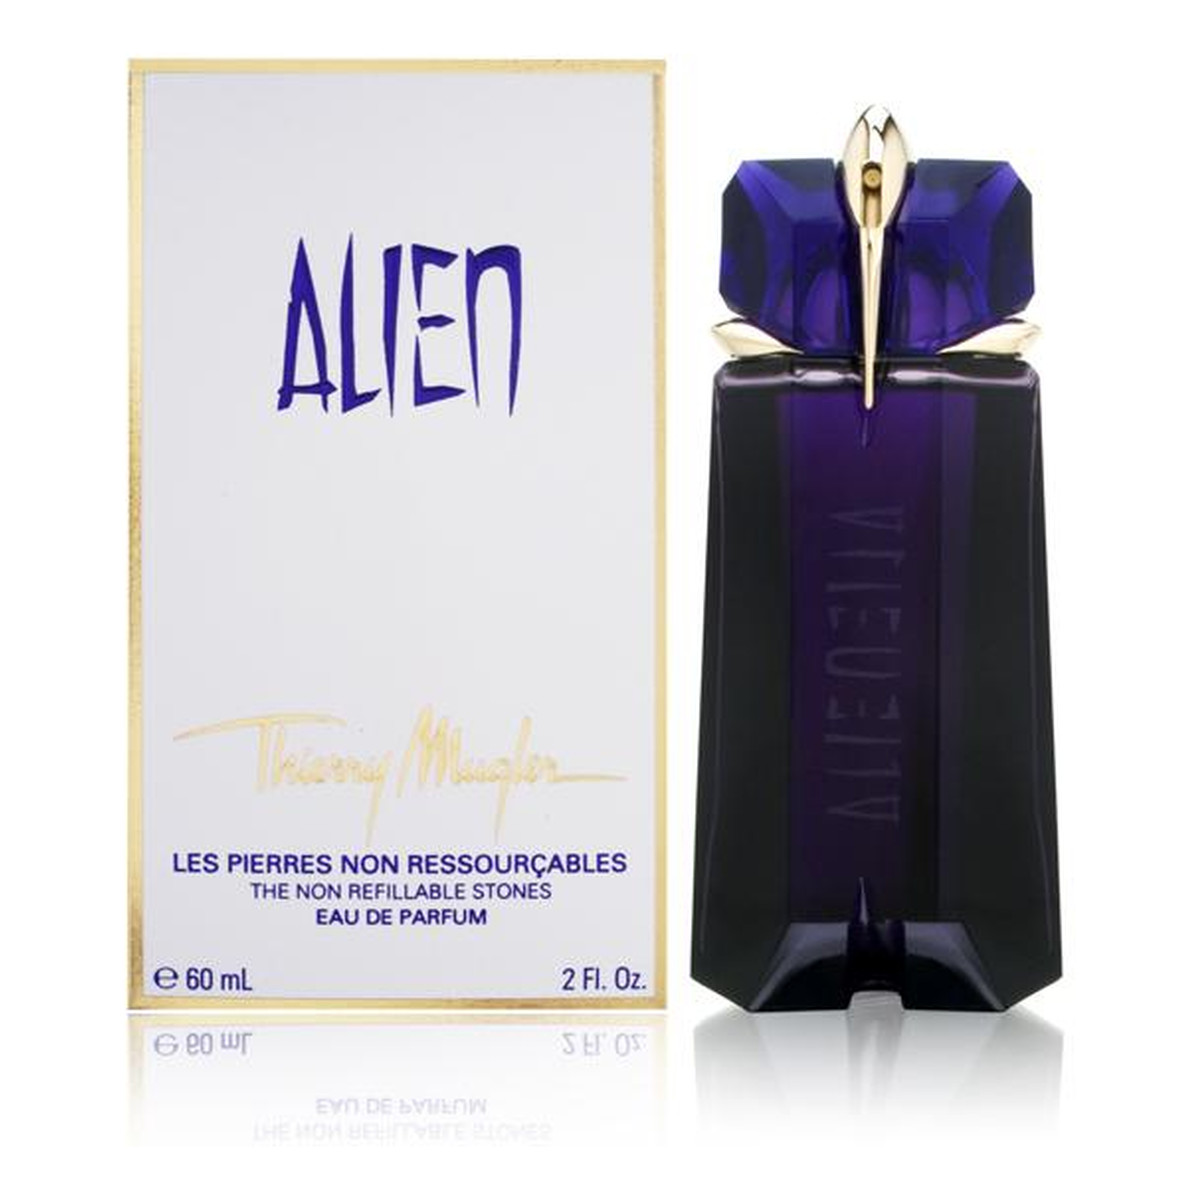 Thierry Mugler Alien Woda perfumowana 60ml